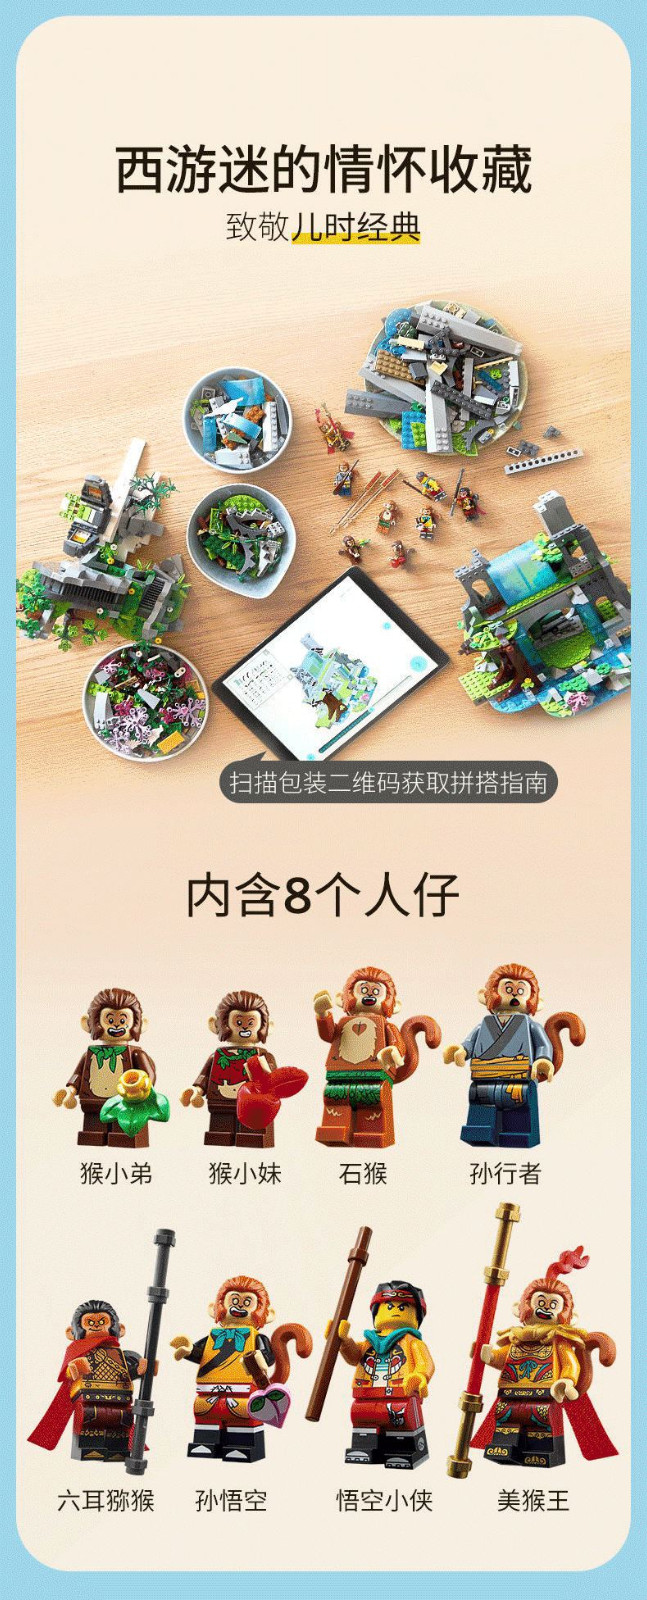 乐高(LEGO)积木 Monkie Kid 悟空小侠系列 10岁+ 80024 传奇花果山